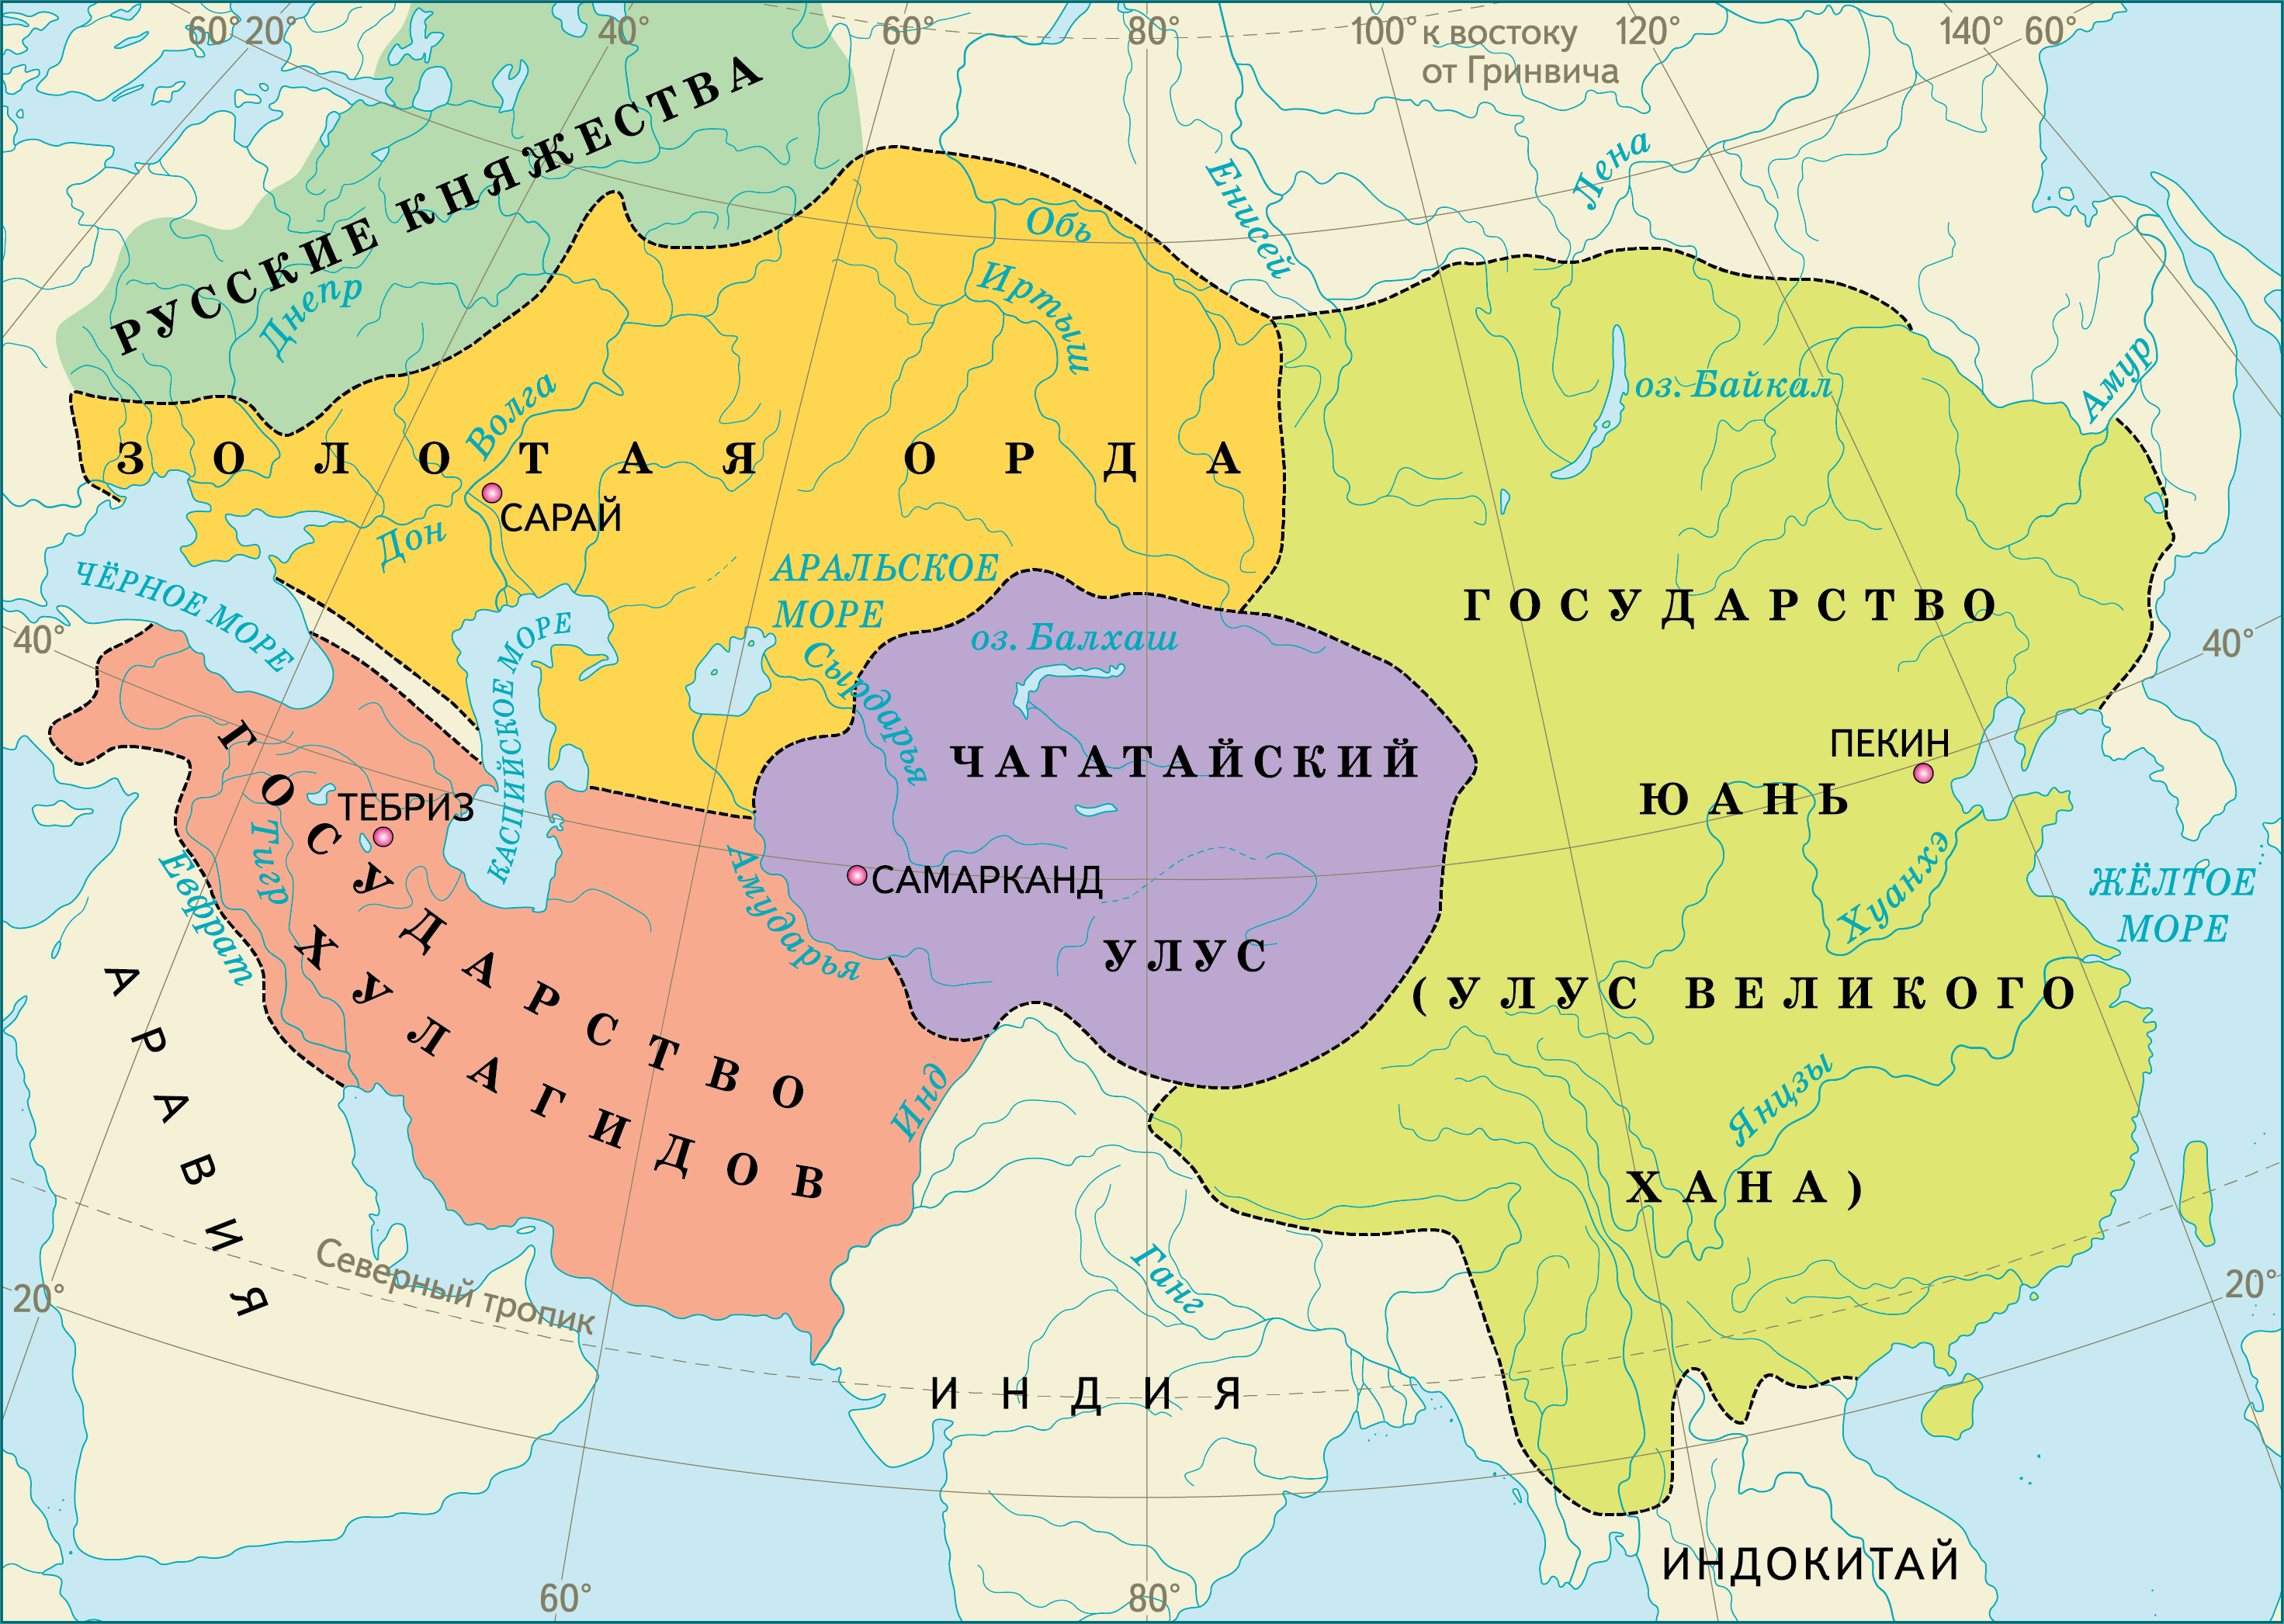 Великий полководец - Чингисхан объединил кочевников и стал основателем самой огромной в истории Монгольской Империи